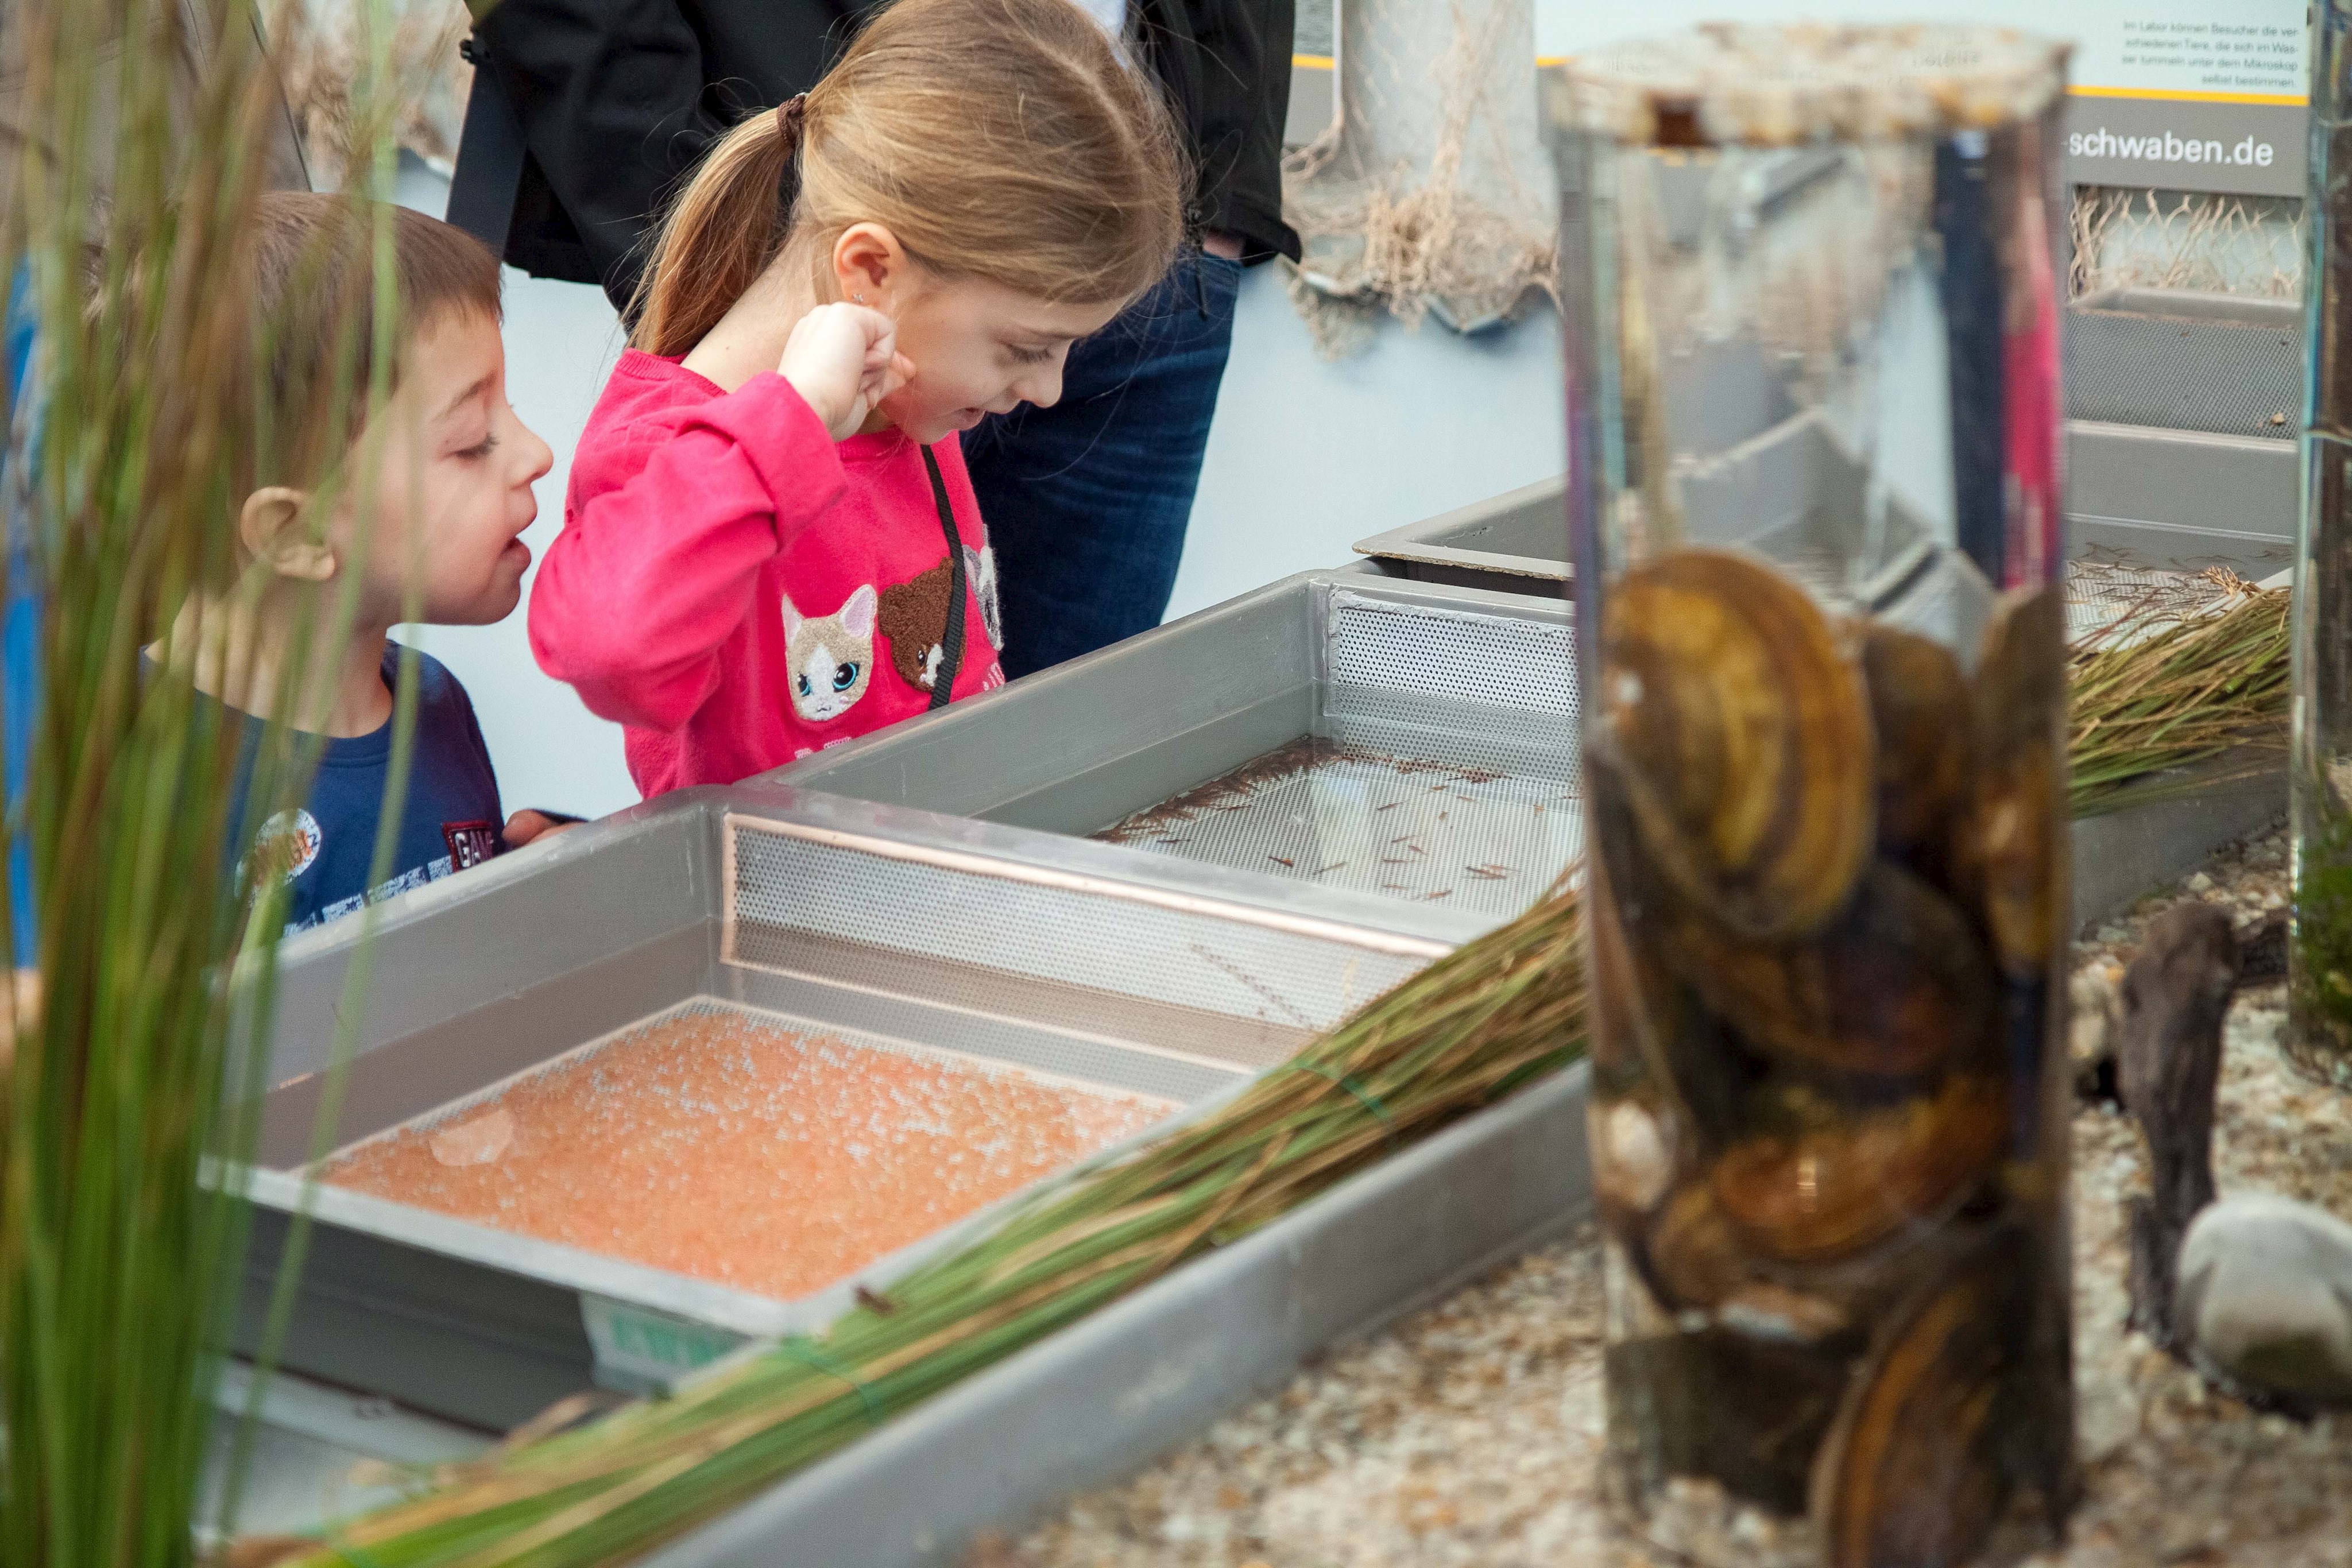 Die Erbrütungsrinne, die die Entwicklung vom Fischei zum fertigen Fisch zeigt, faszinierte vor allem die jungen Besucher.